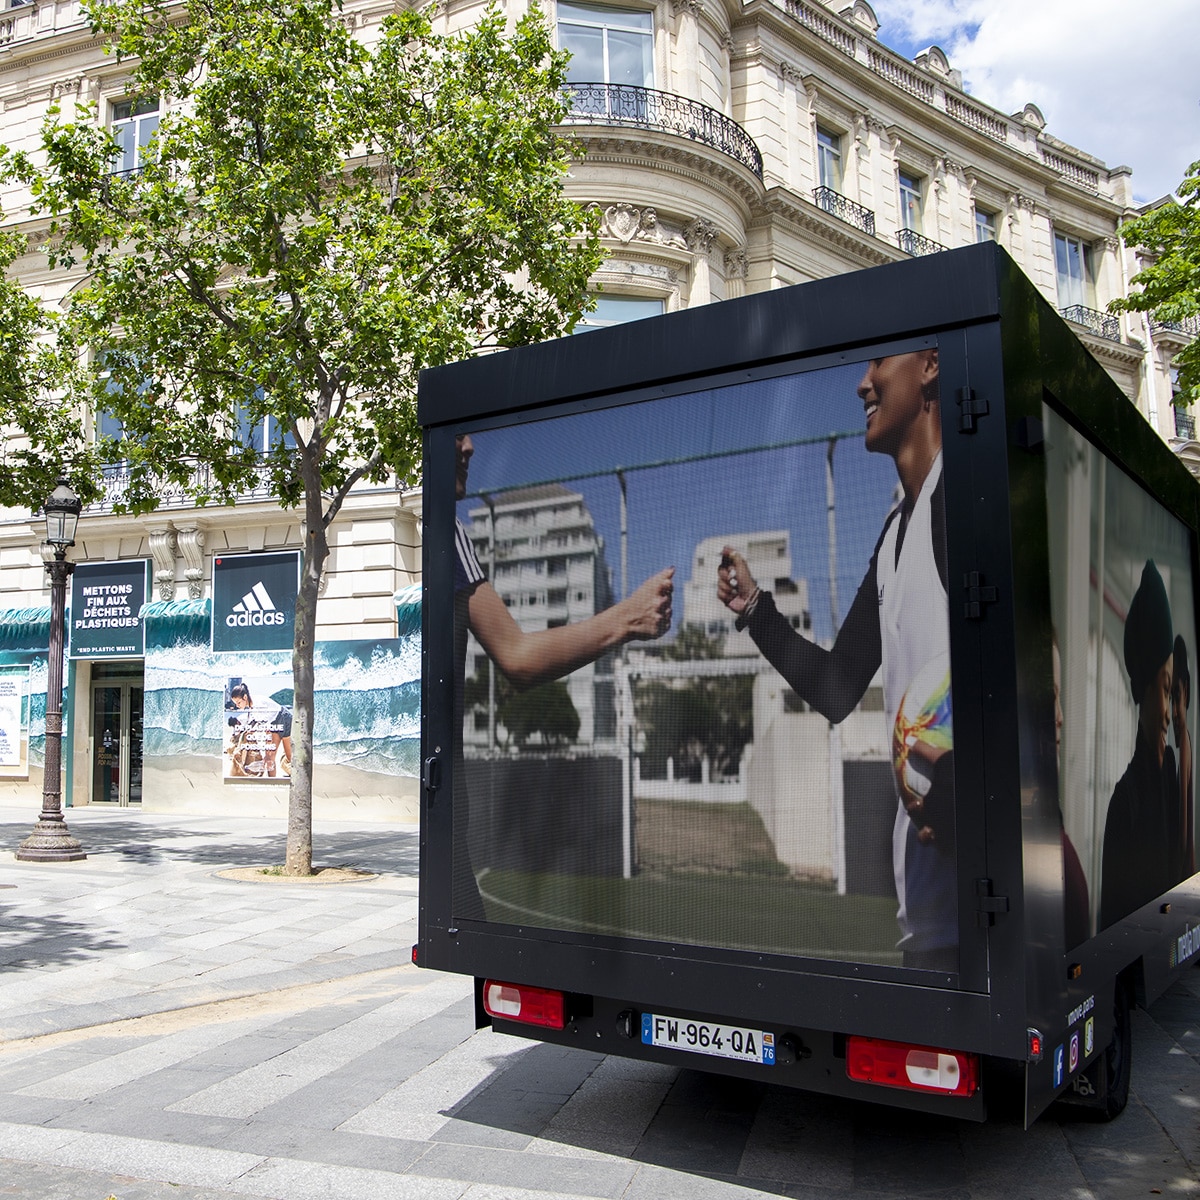 Media Move : Un camion vidéo mobile recouverts d'écrans LED